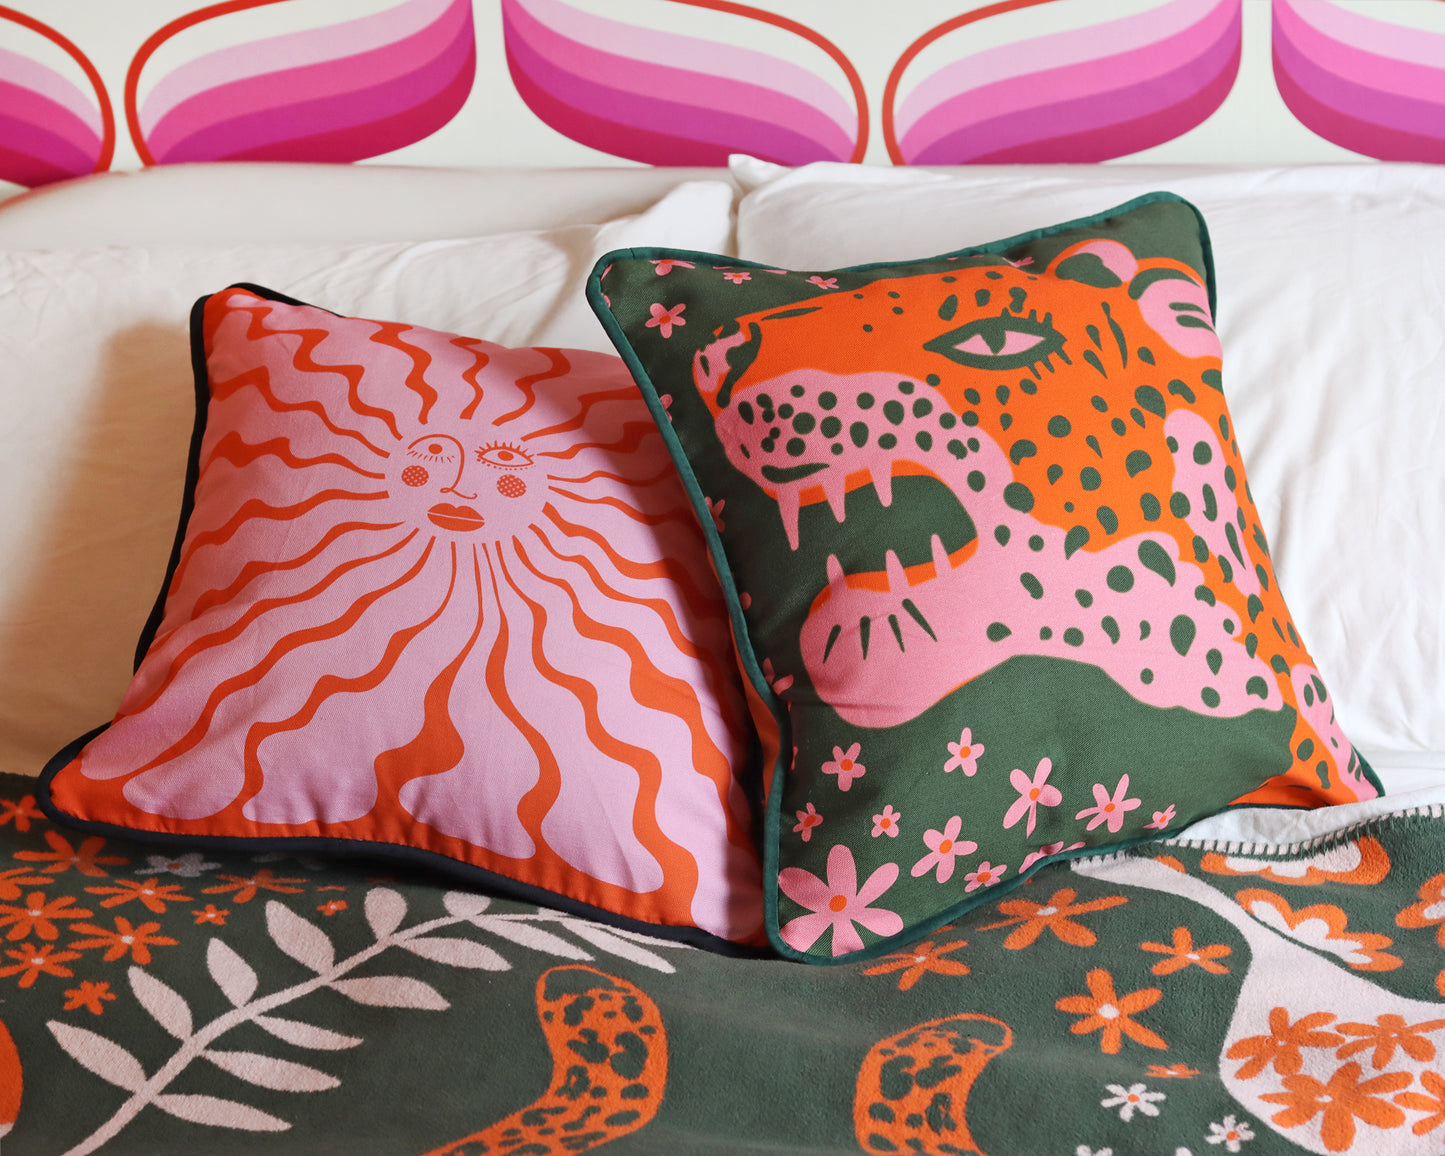 Wavy Sunshine Cushion - orange/ pink